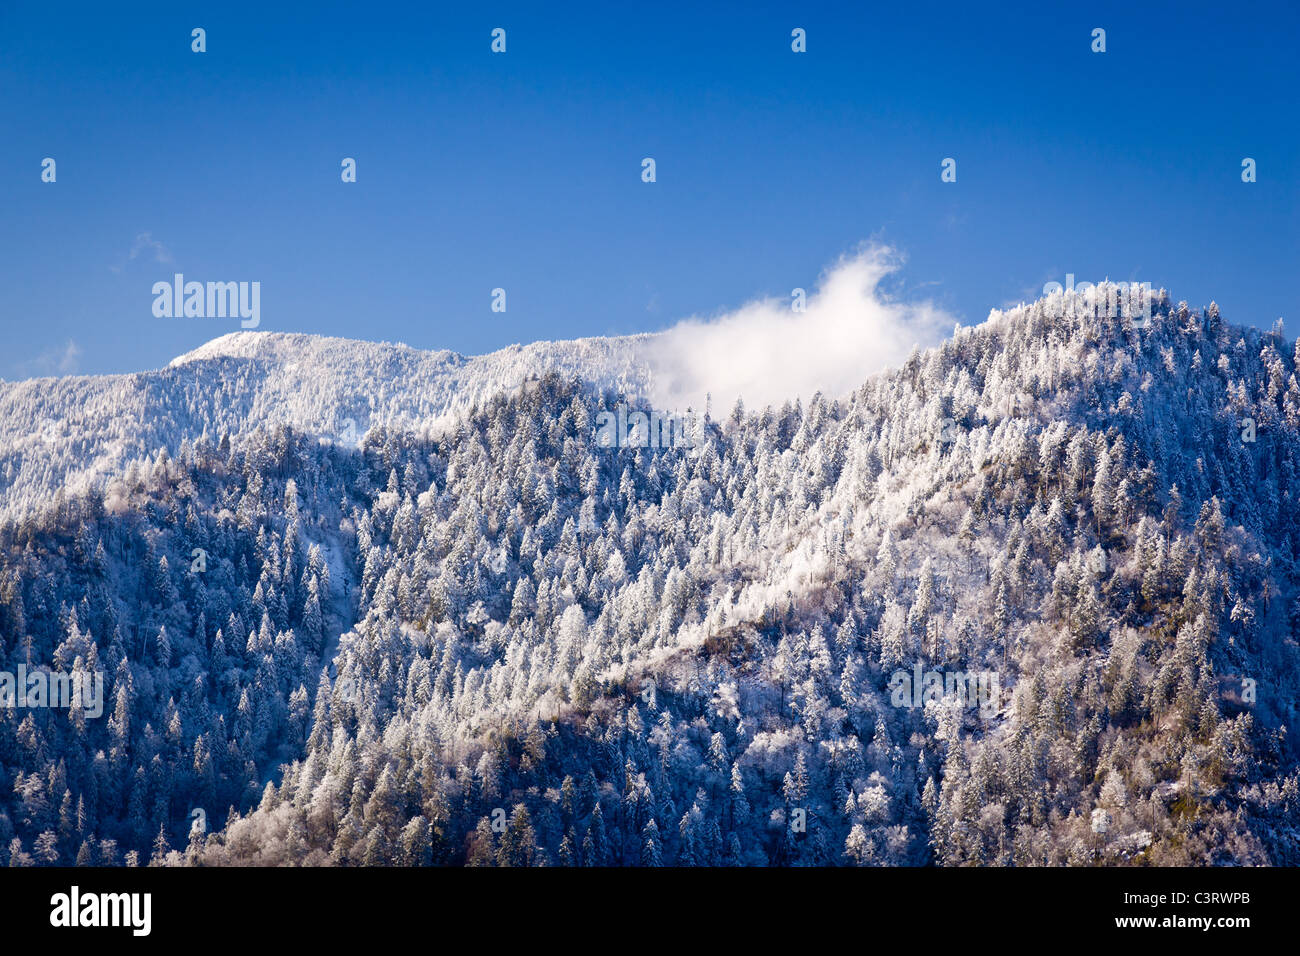 Parc national des Great Smoky Mountains - vue du Mont Leconte recouverts de neige en scène d'hiver / début du printemps, USA Banque D'Images